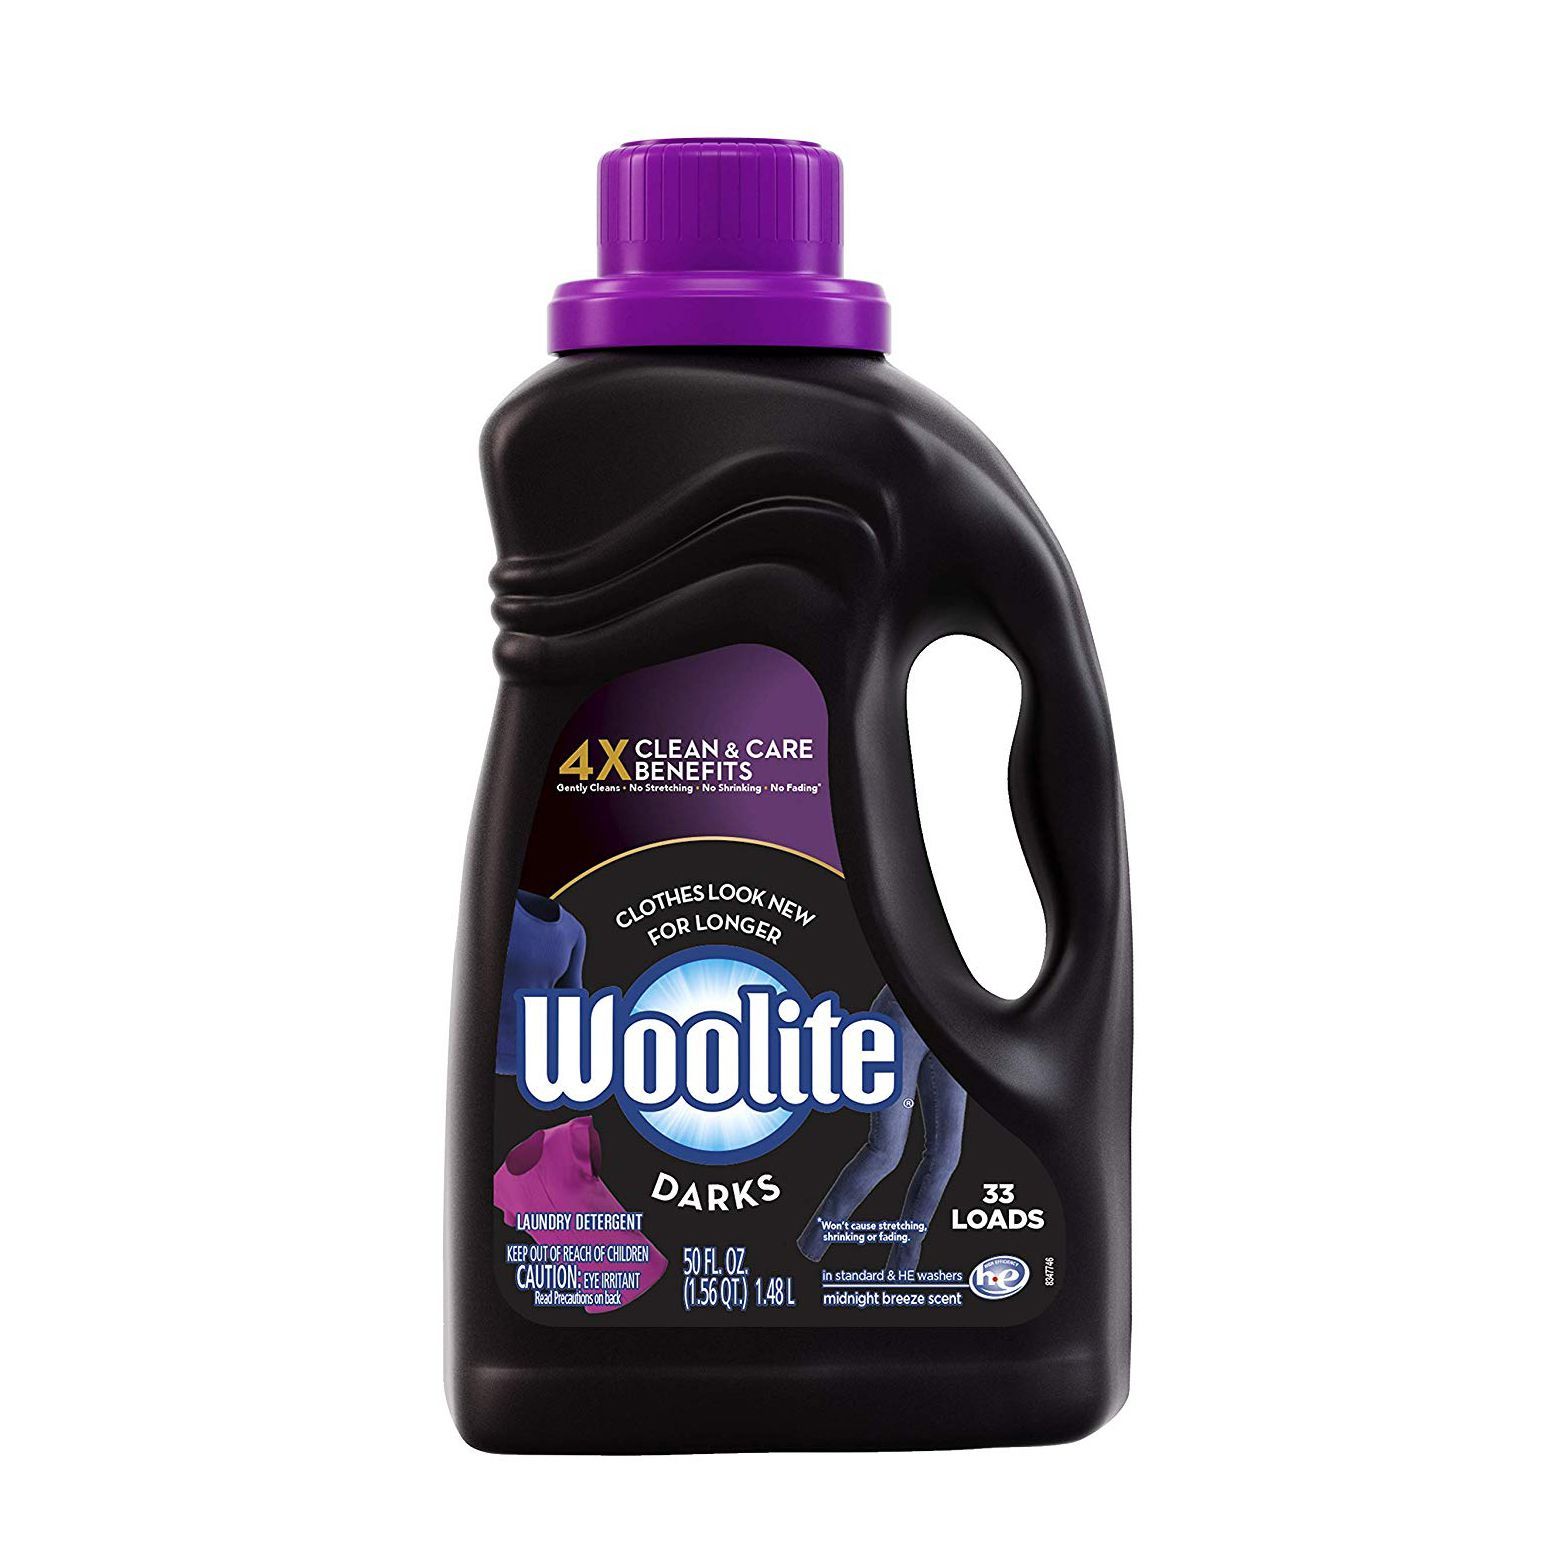 Woolite Darks Liquid Laundry Detergent